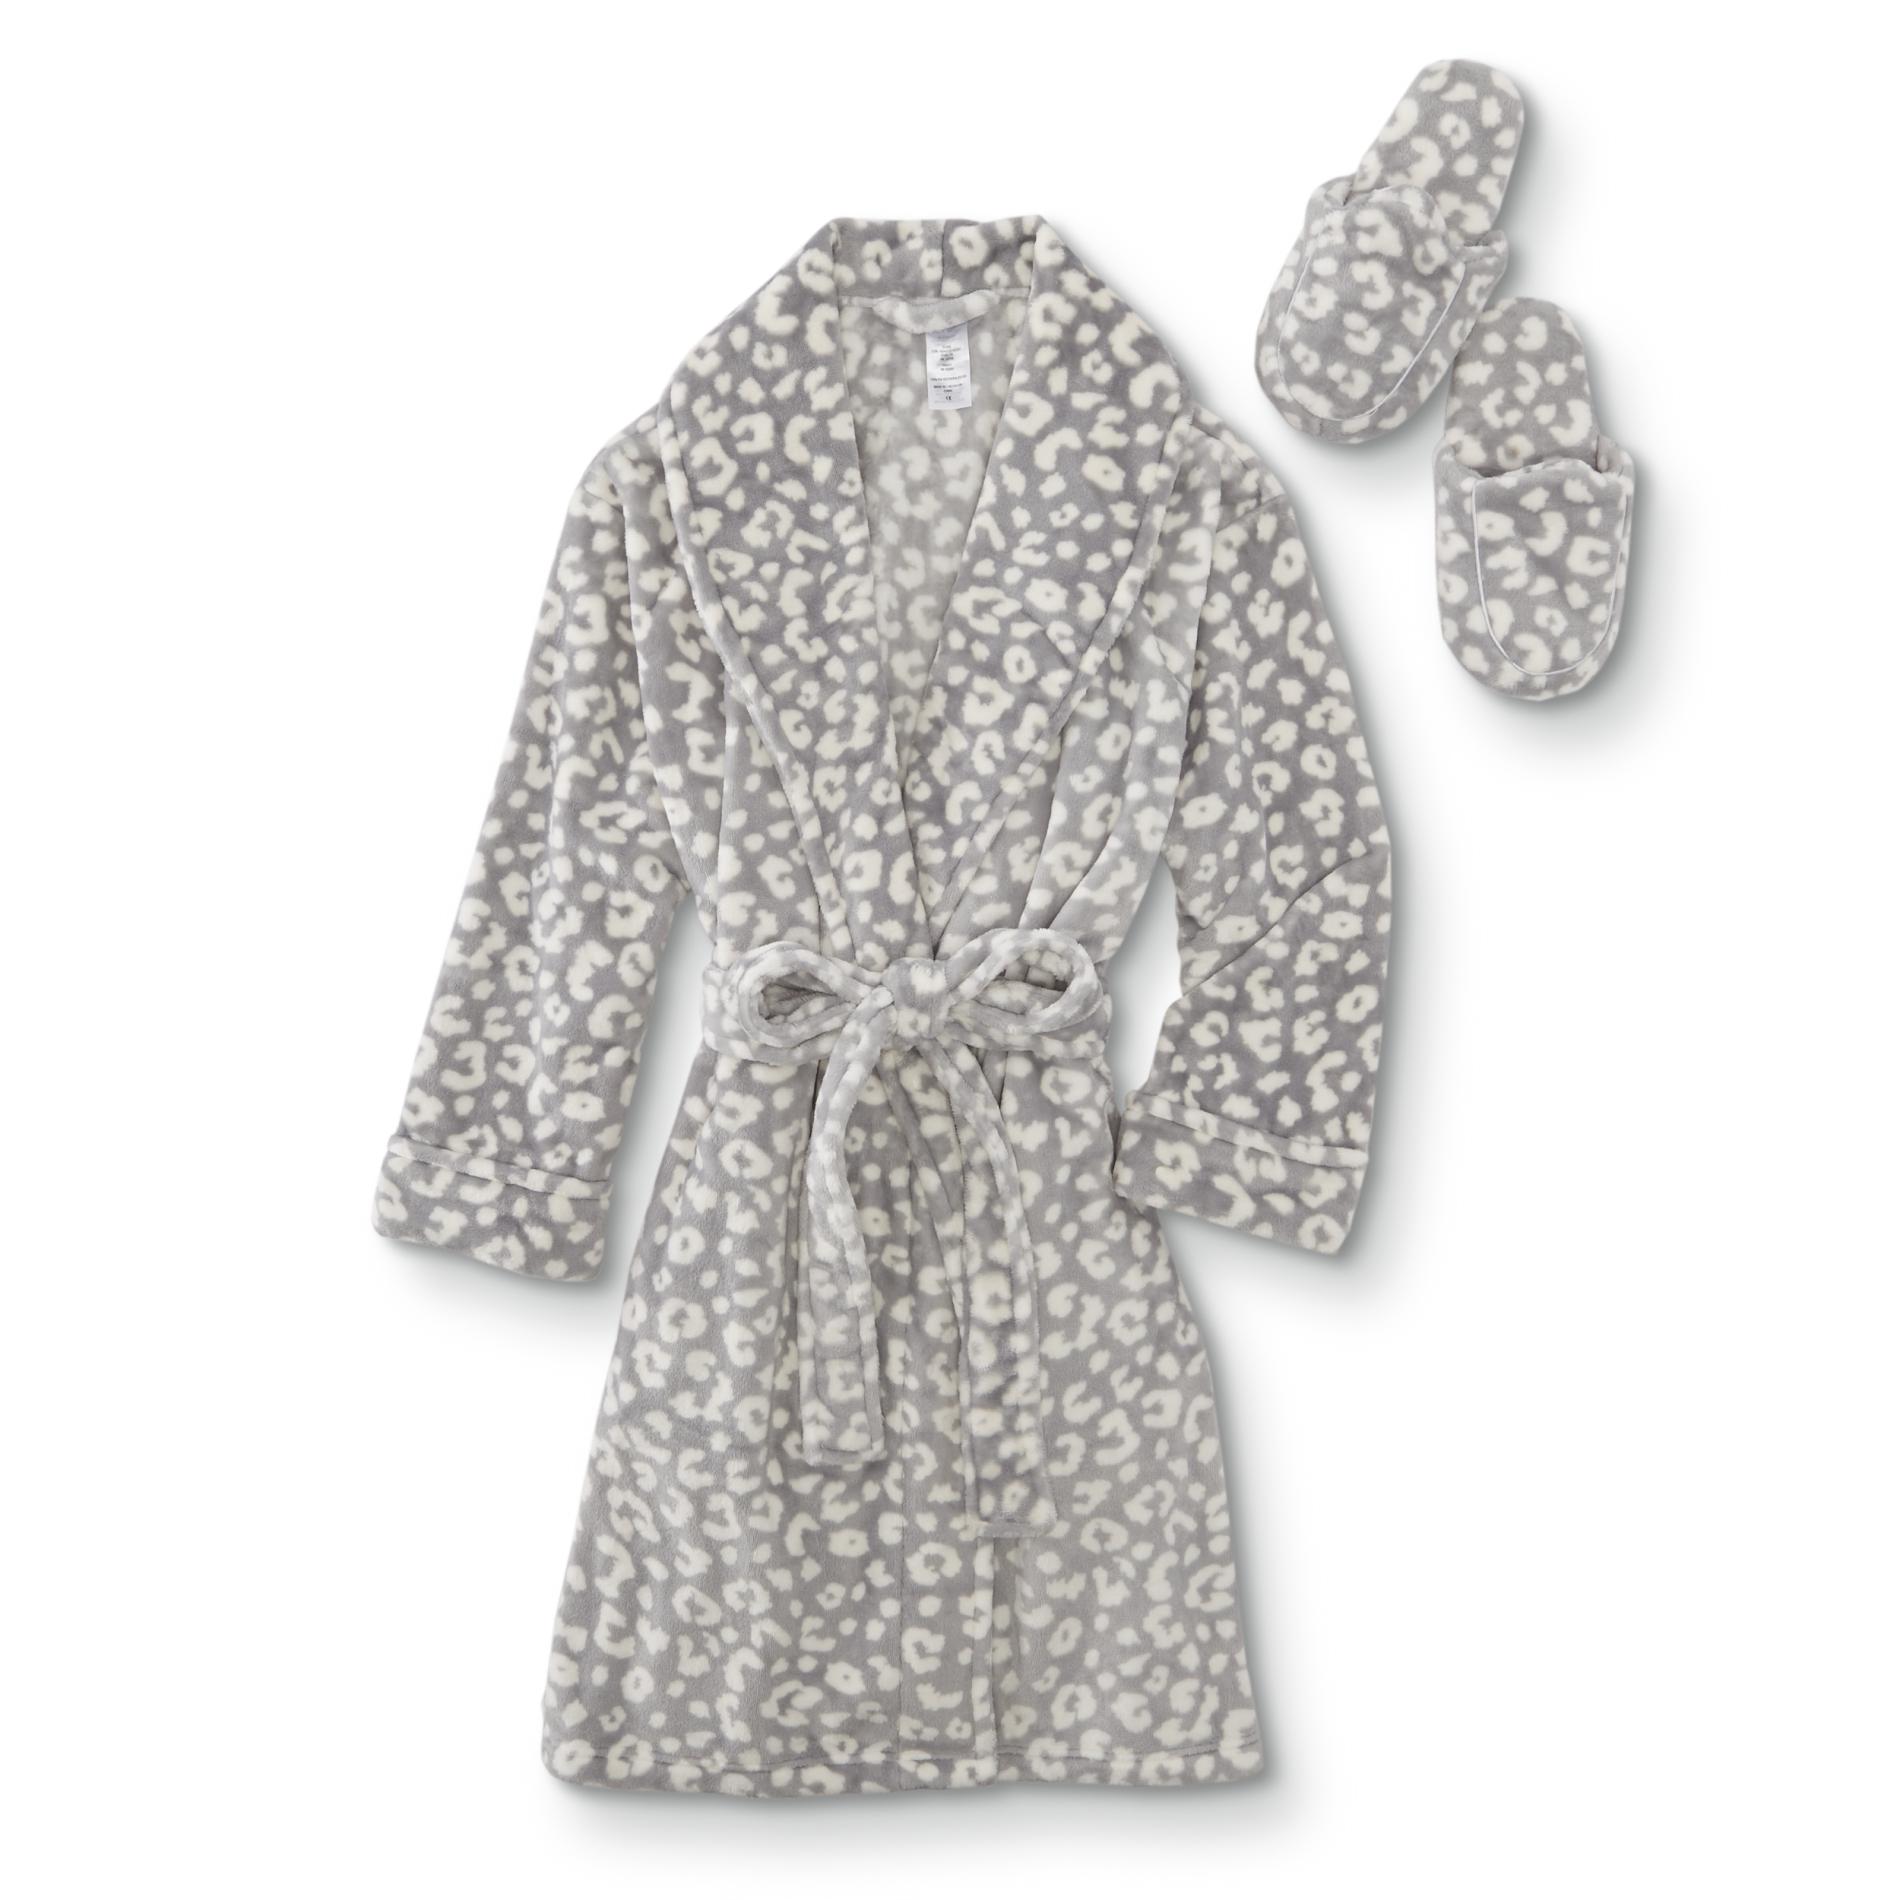 Simply Styled Women's Plus Fleece Robe & Slippers - Leopard